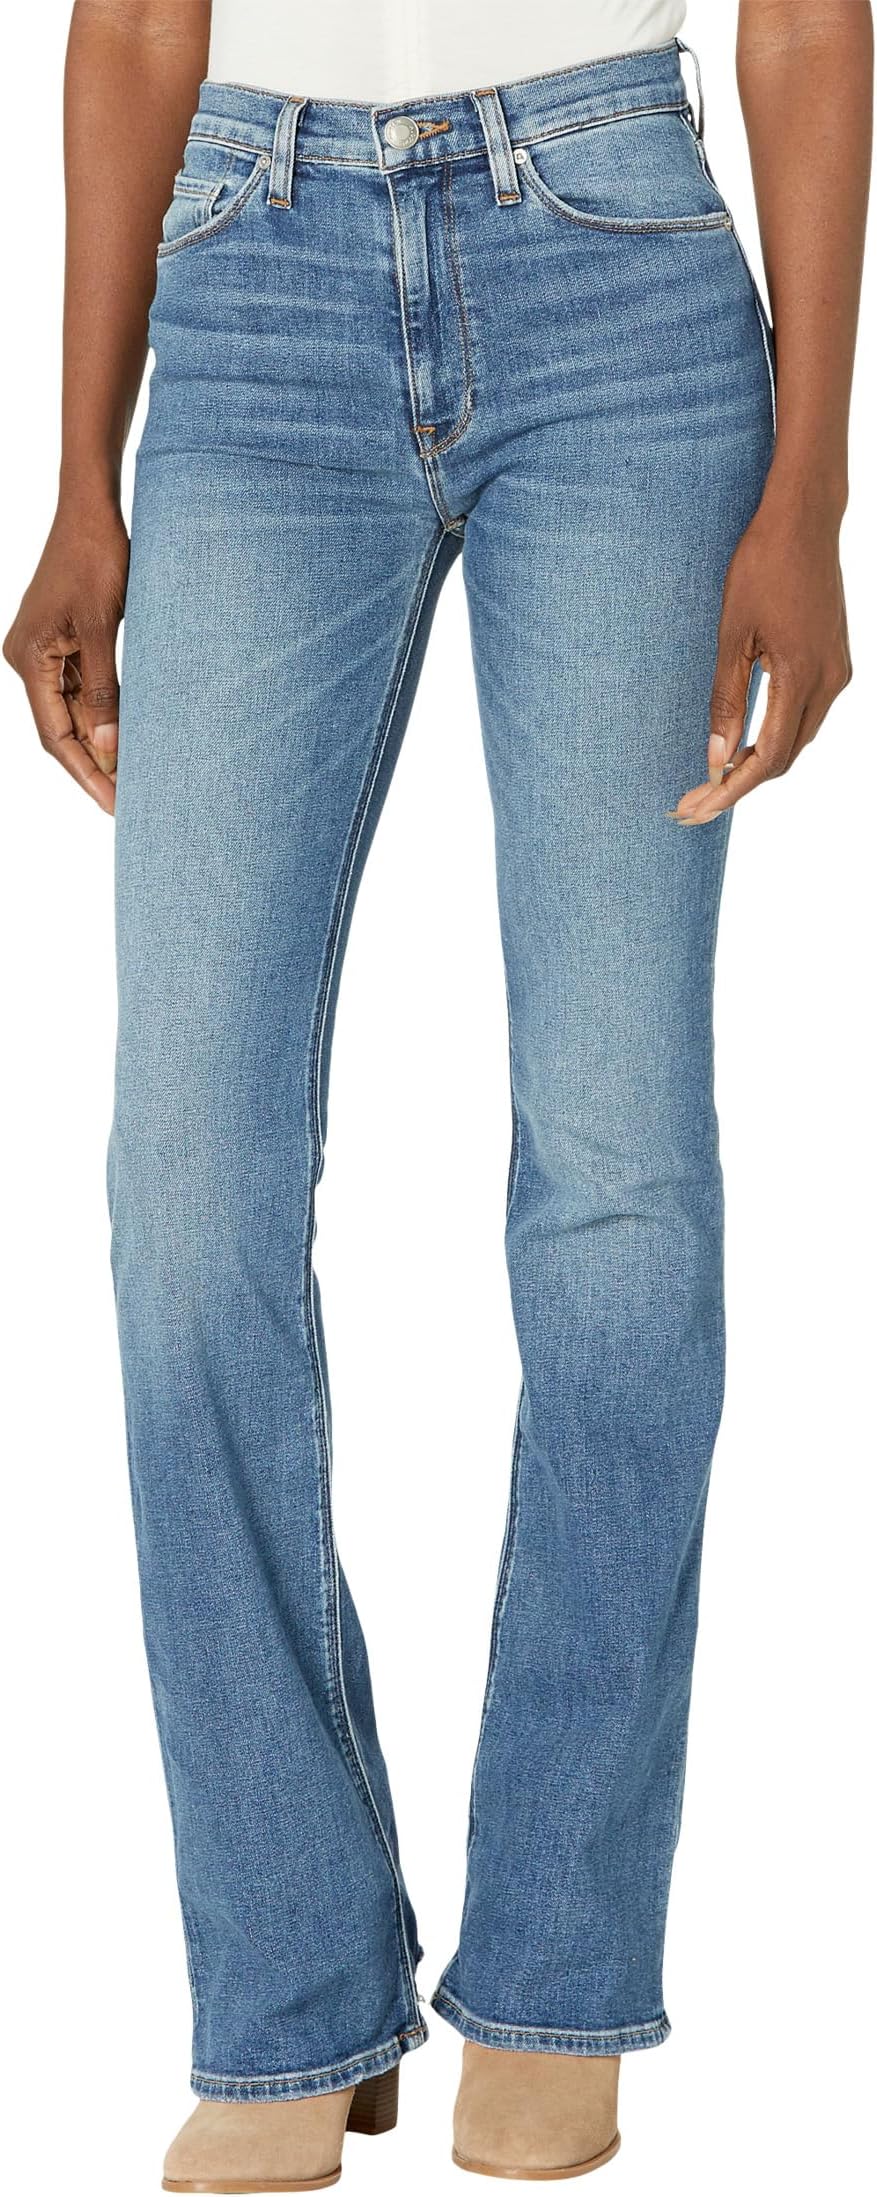 Джинсы Barbara High-Rise Bootcut in Sandy Dest Hem Hudson Jeans, цвет Sandy Dest Hem